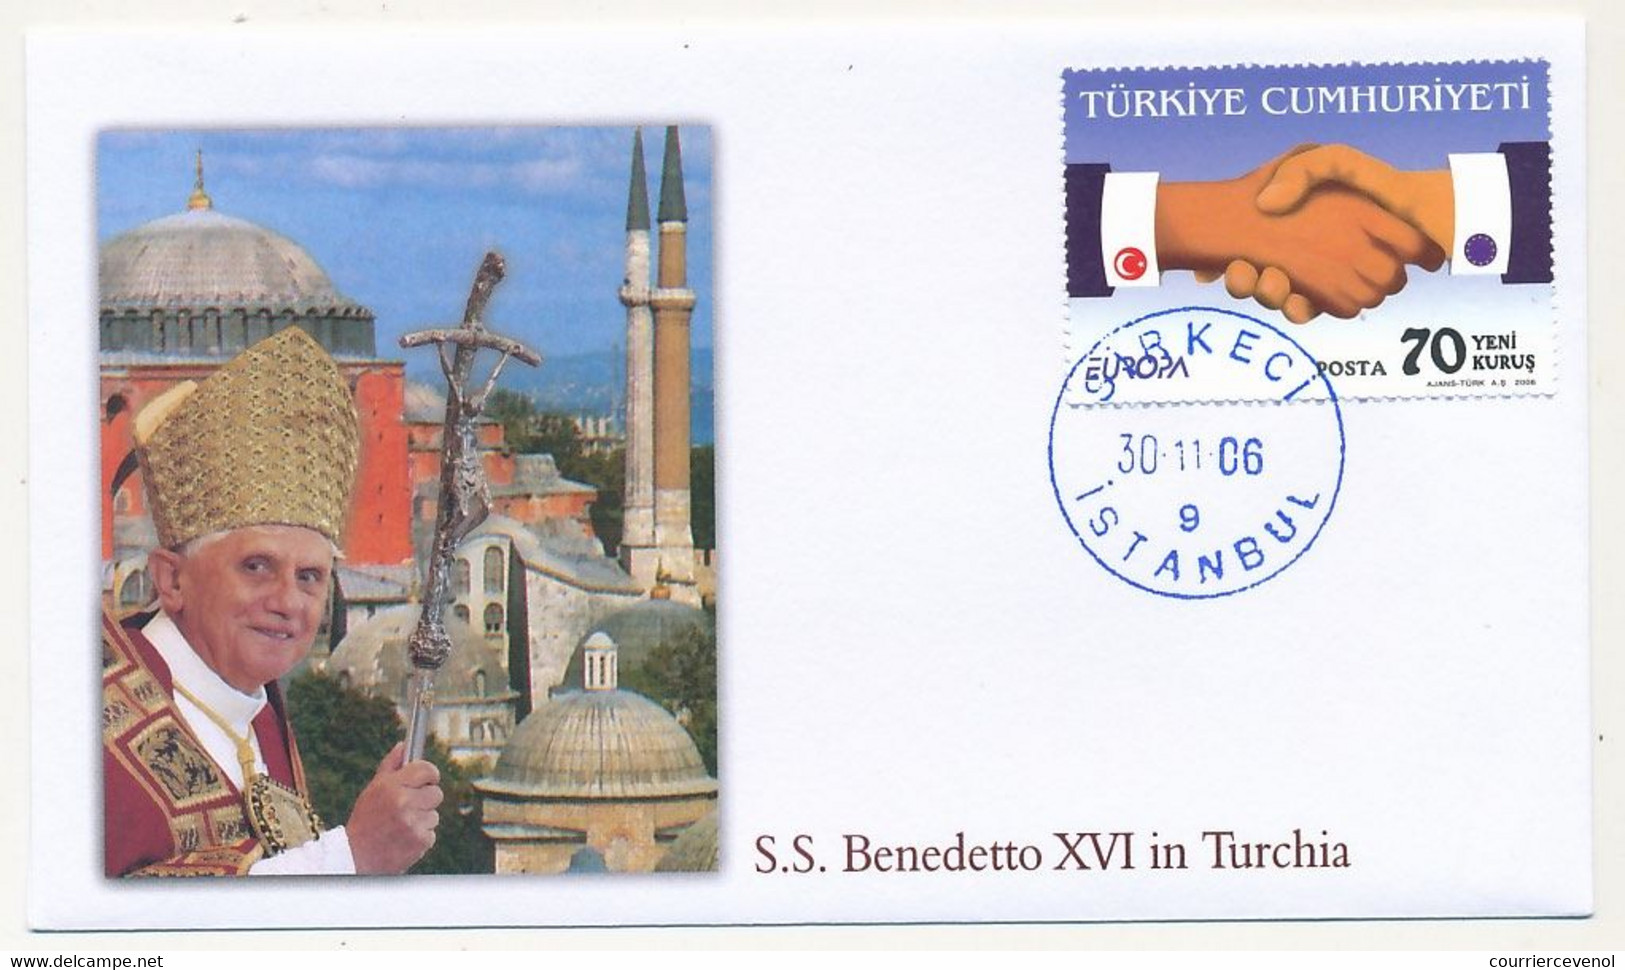 TURQUIE - 4 Enveloppes Illustrées - Voyage Du Pape Benoit XVI En Turquie - 28/11/2006 Au 1/12/2006 - Christianisme